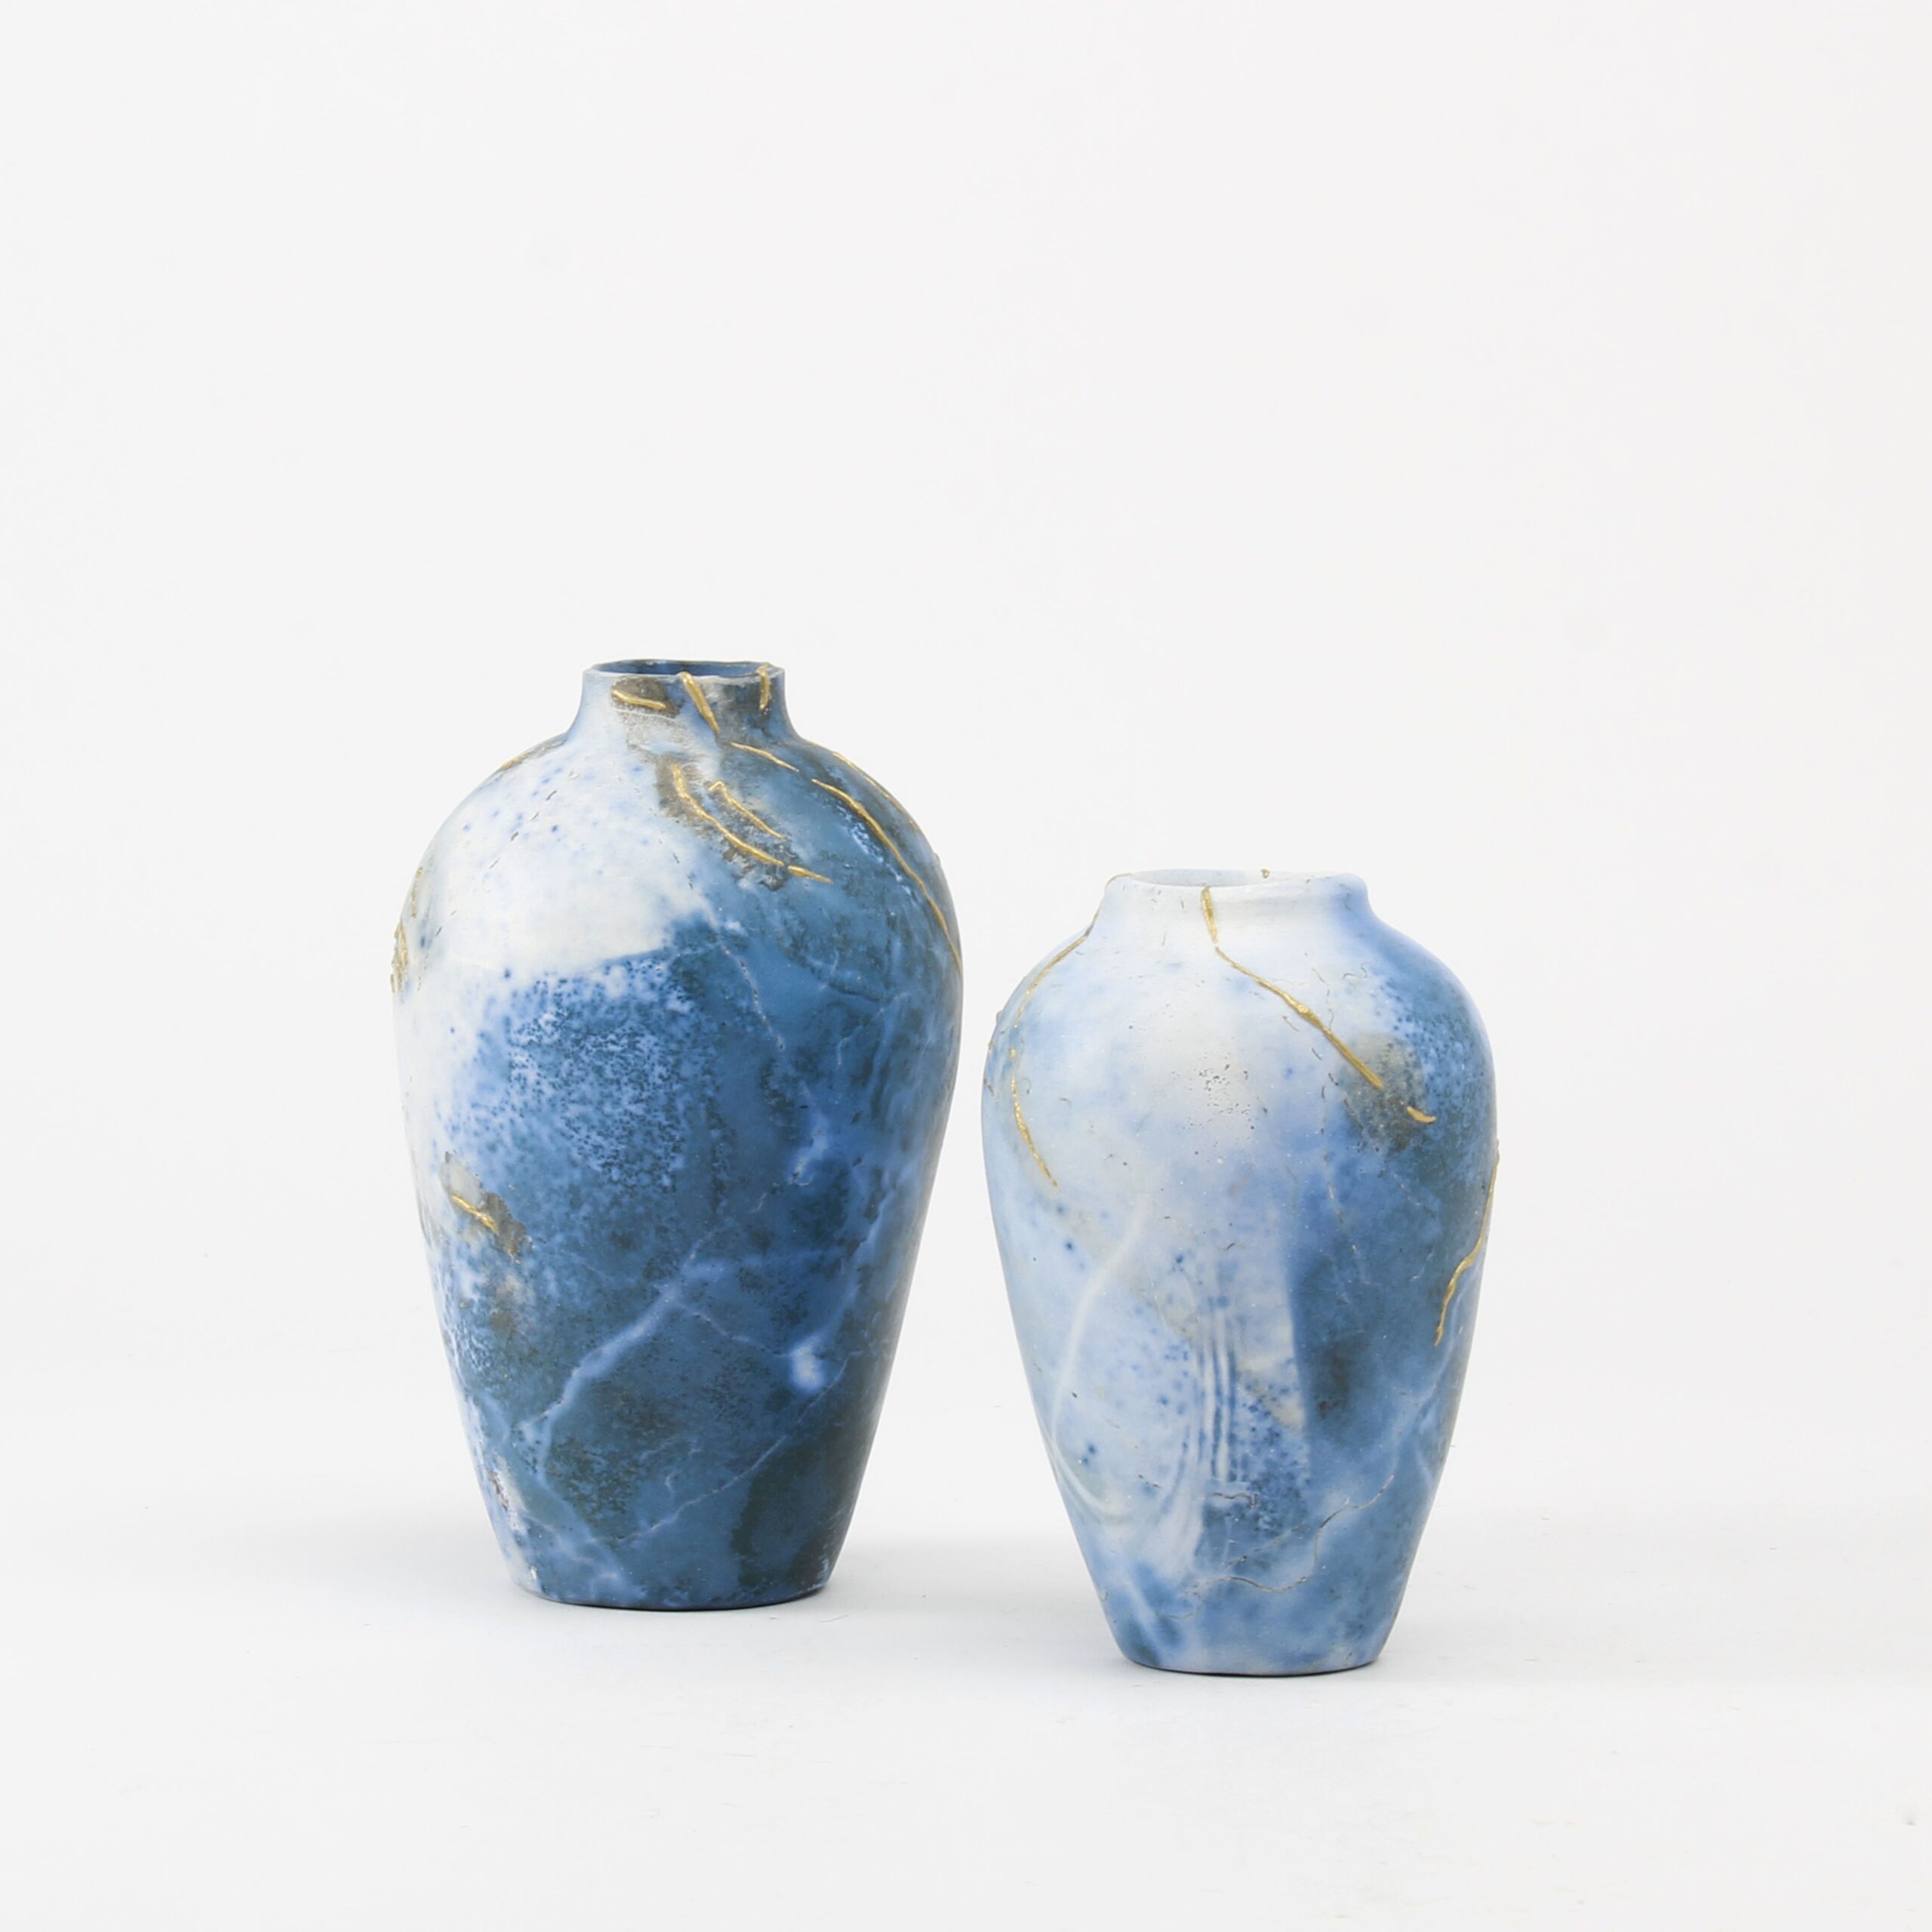 Alison Brannen: Medium Classic Urn Product Image 3 of 6